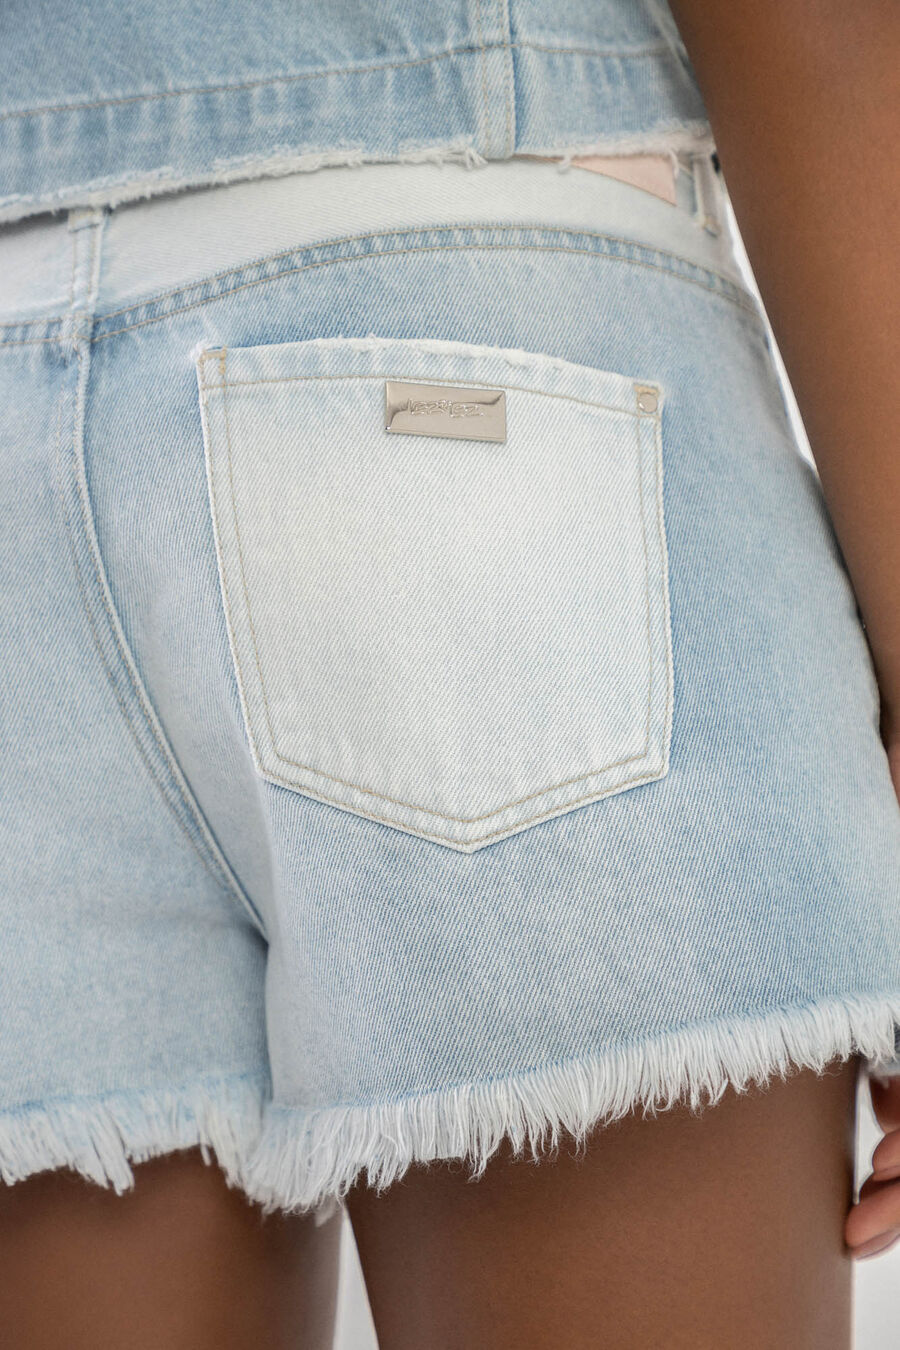 Shorts Jeans Comfort com Cintura Baixa, , large.